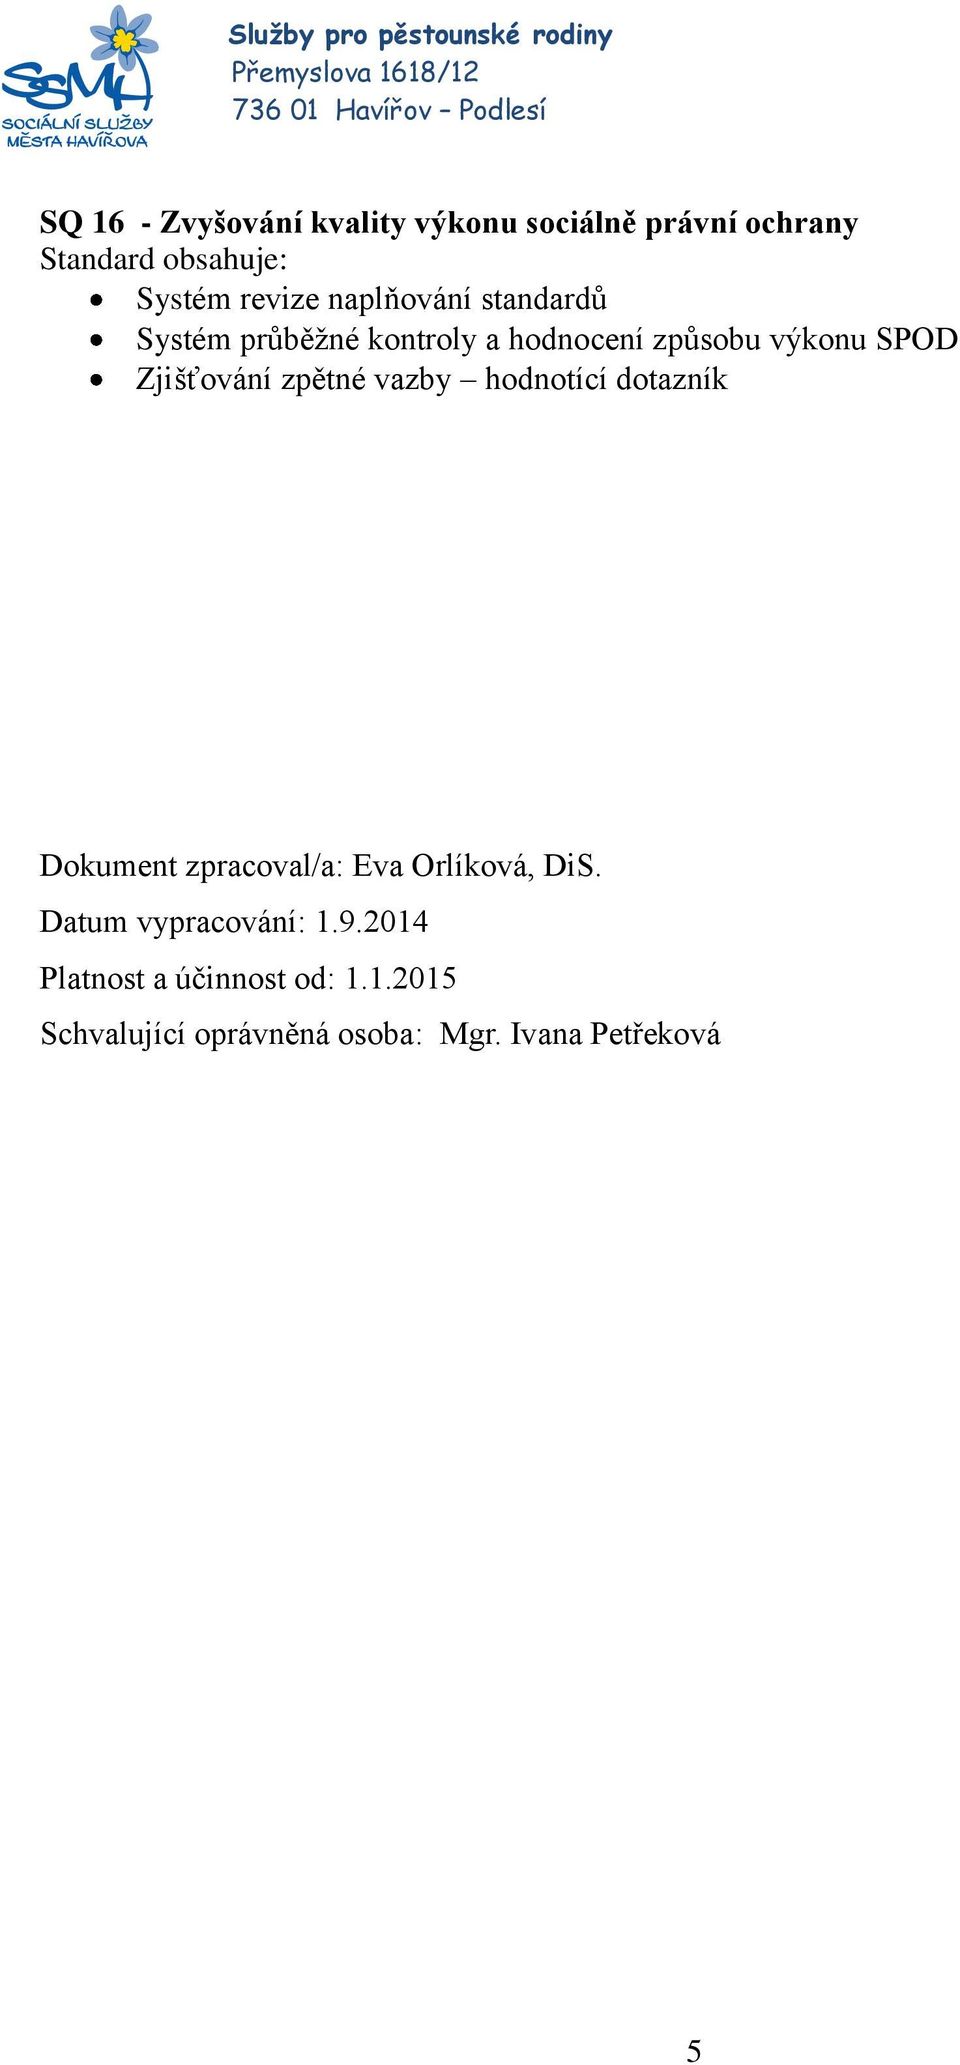 vazby hodnotící dotazník Dokument zpracoval/a: Eva Orlíková, DiS. Datum vypracování: 1.